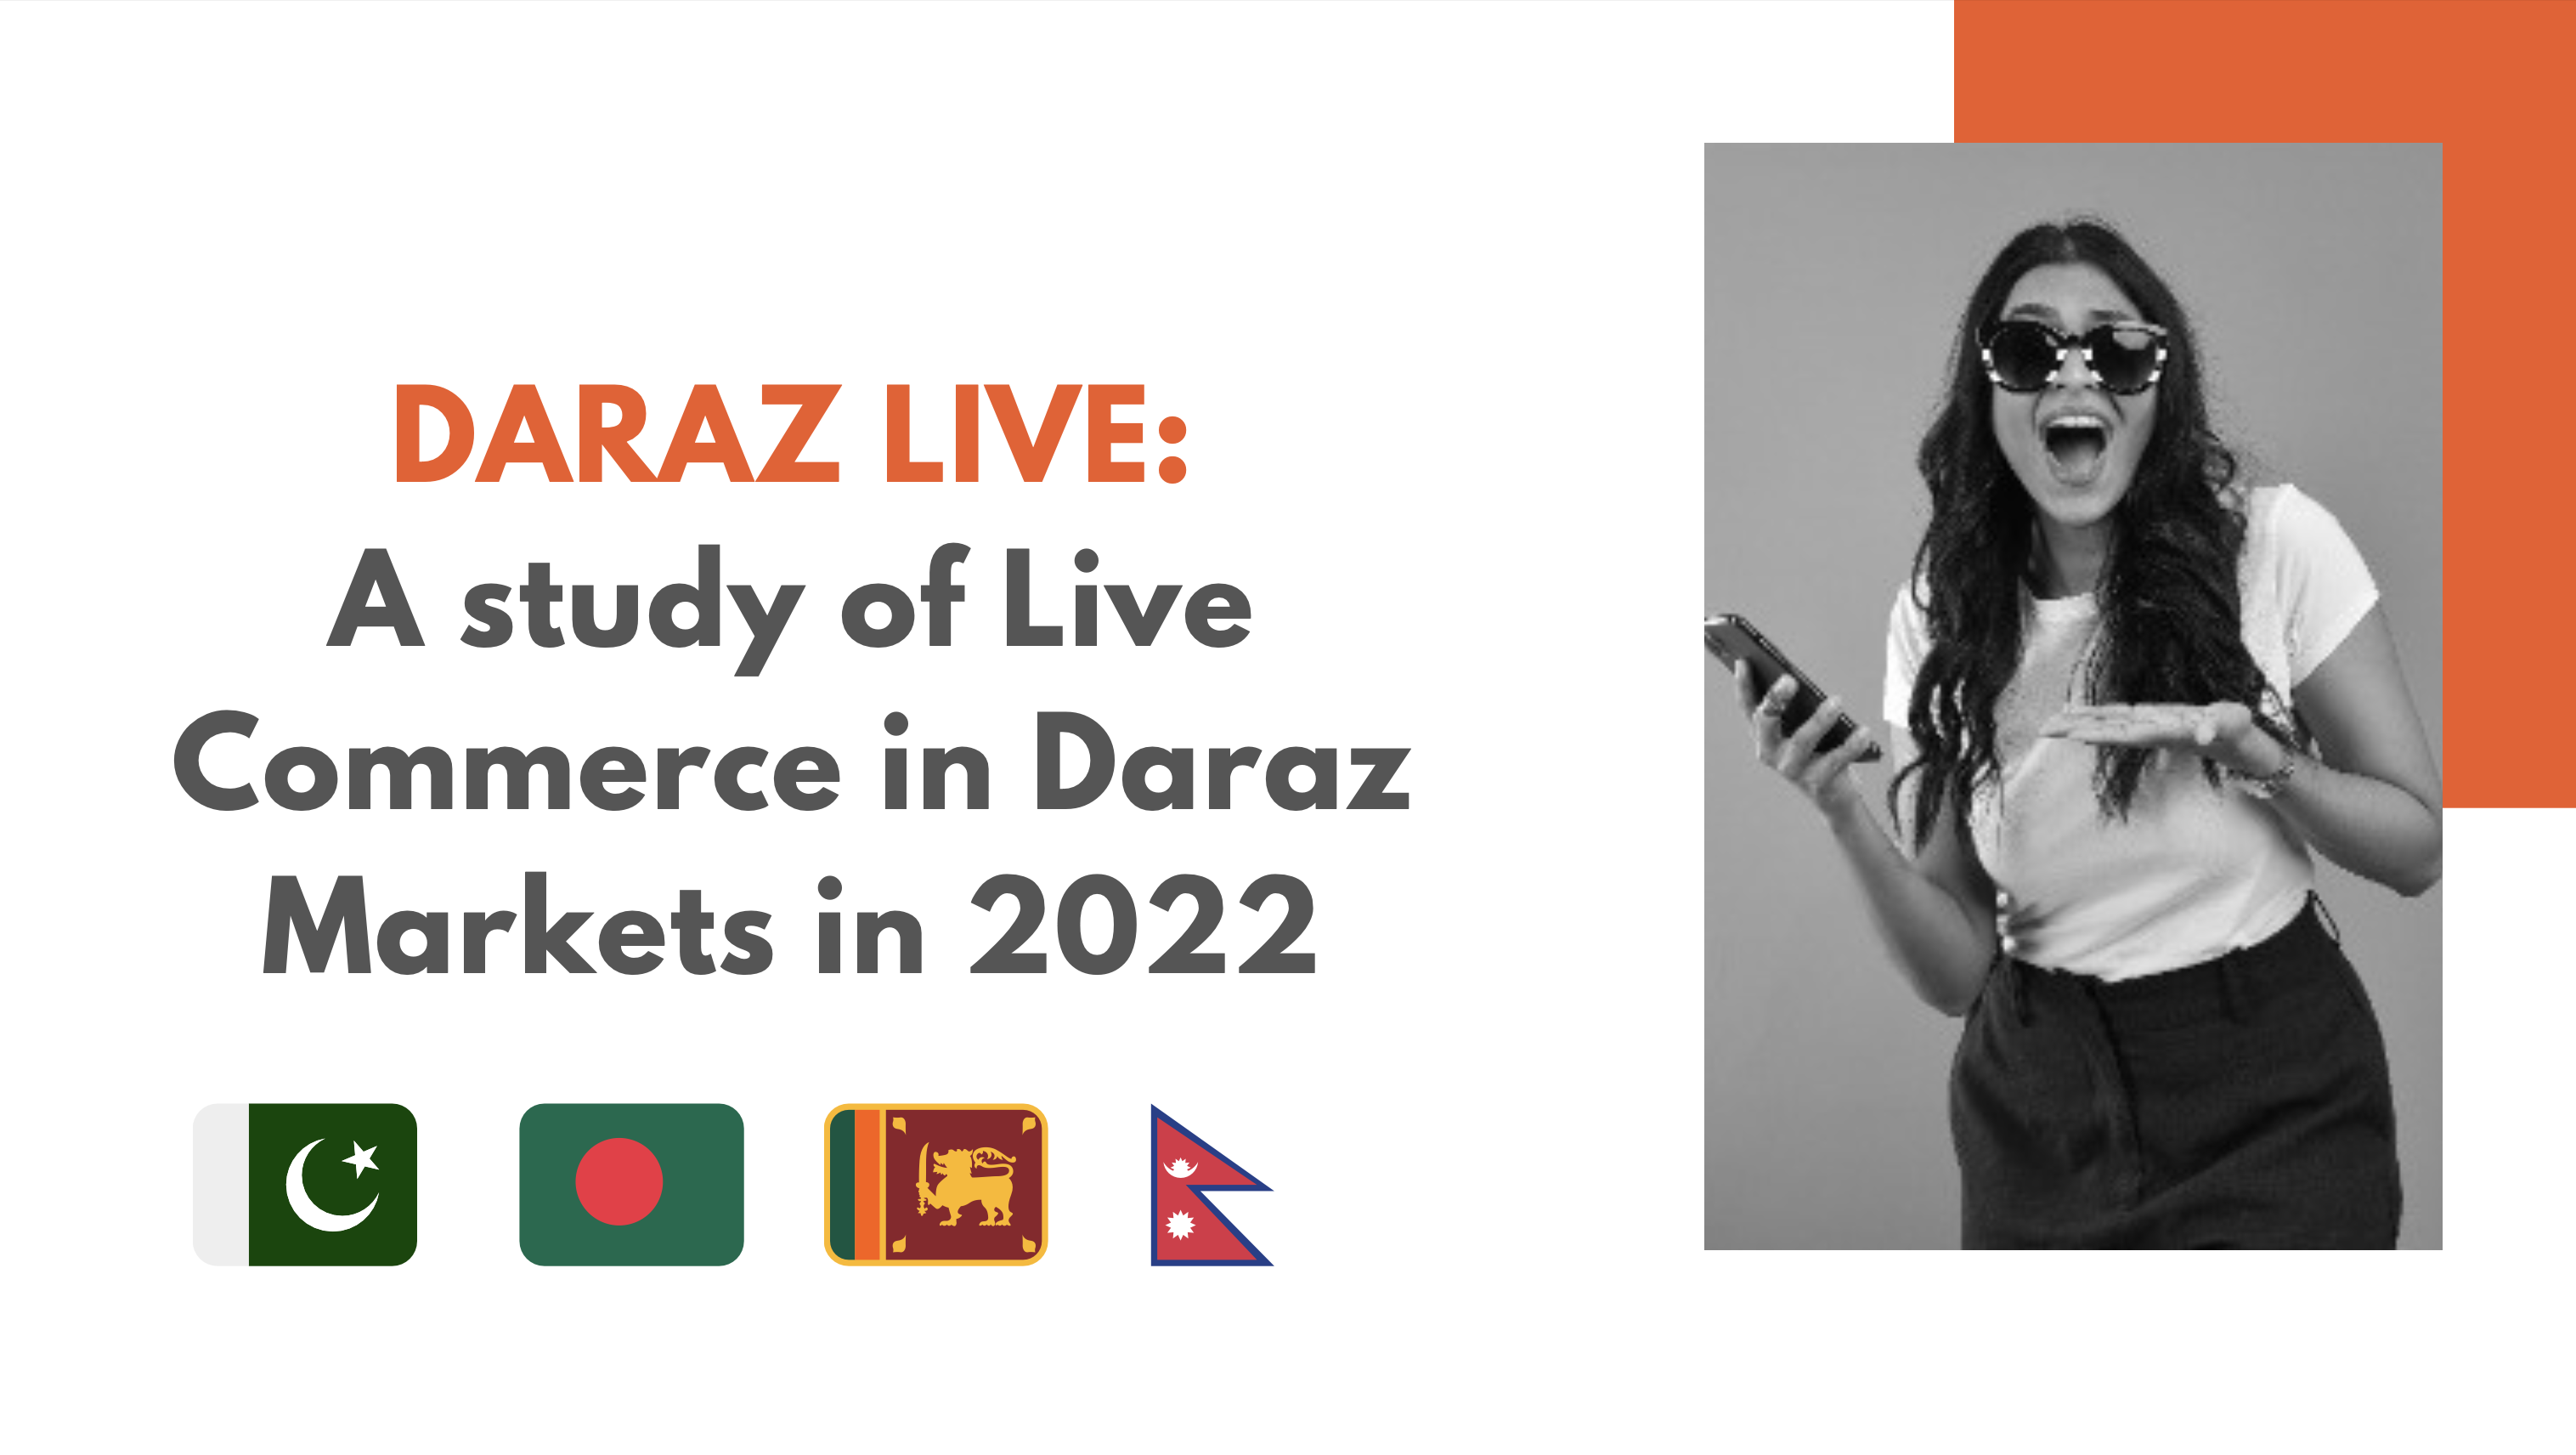 daraz live